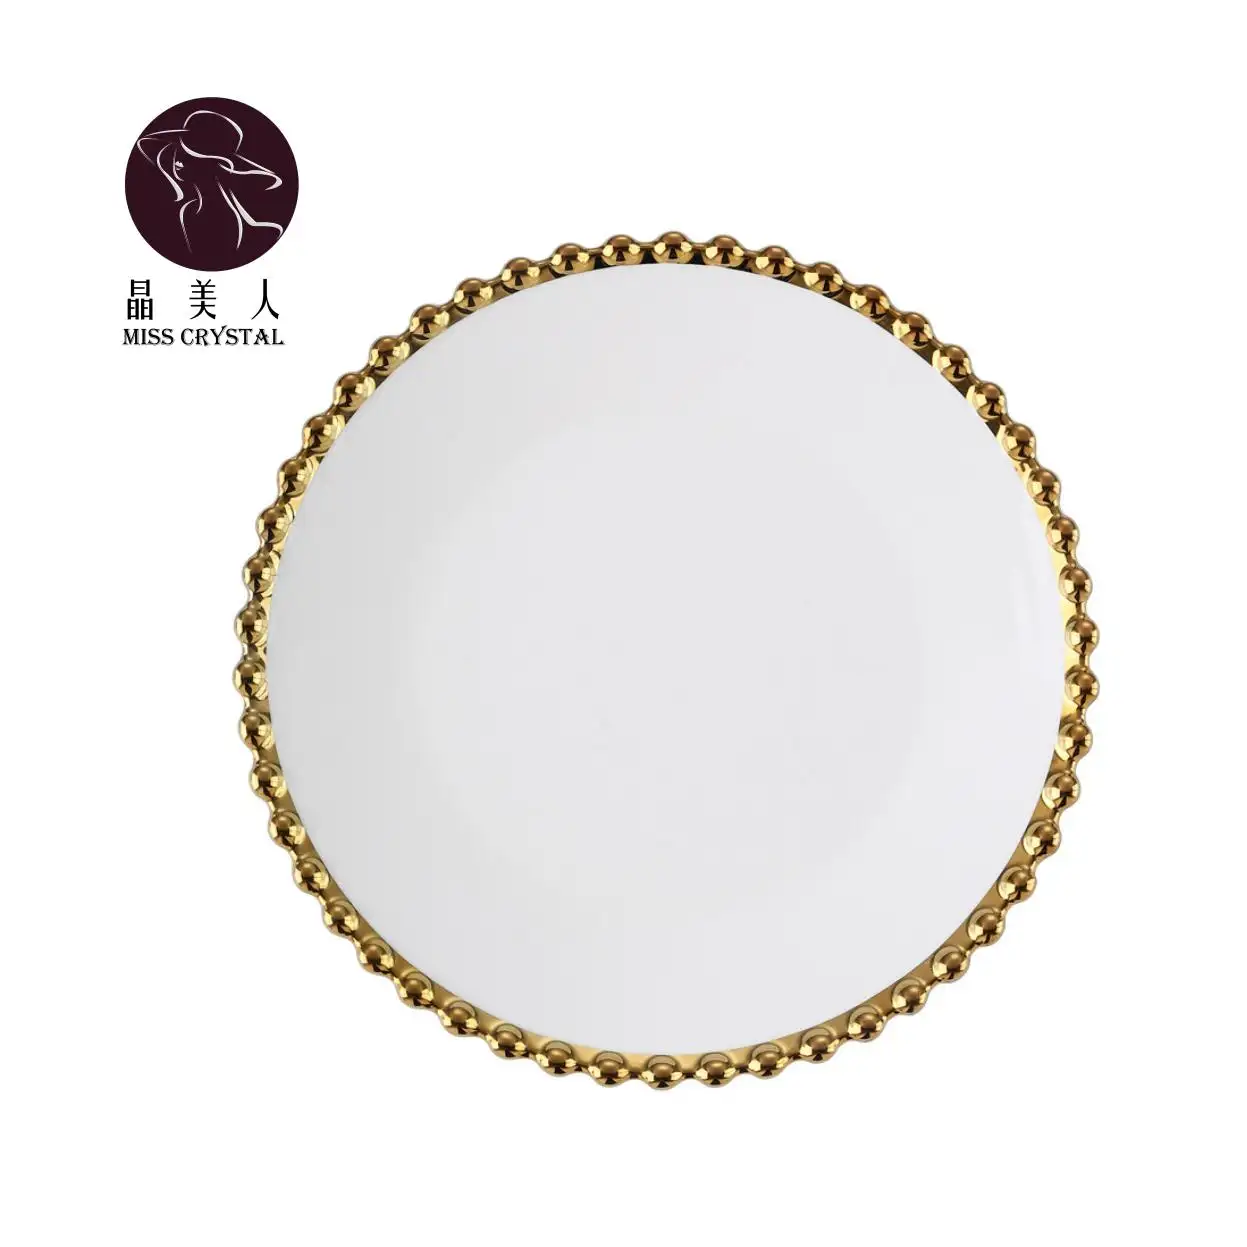 Emballage en boîte unique, assiette occidentale, service de vaisselle en céramique nordique de luxe avec perles dorées et vaisselle blanche